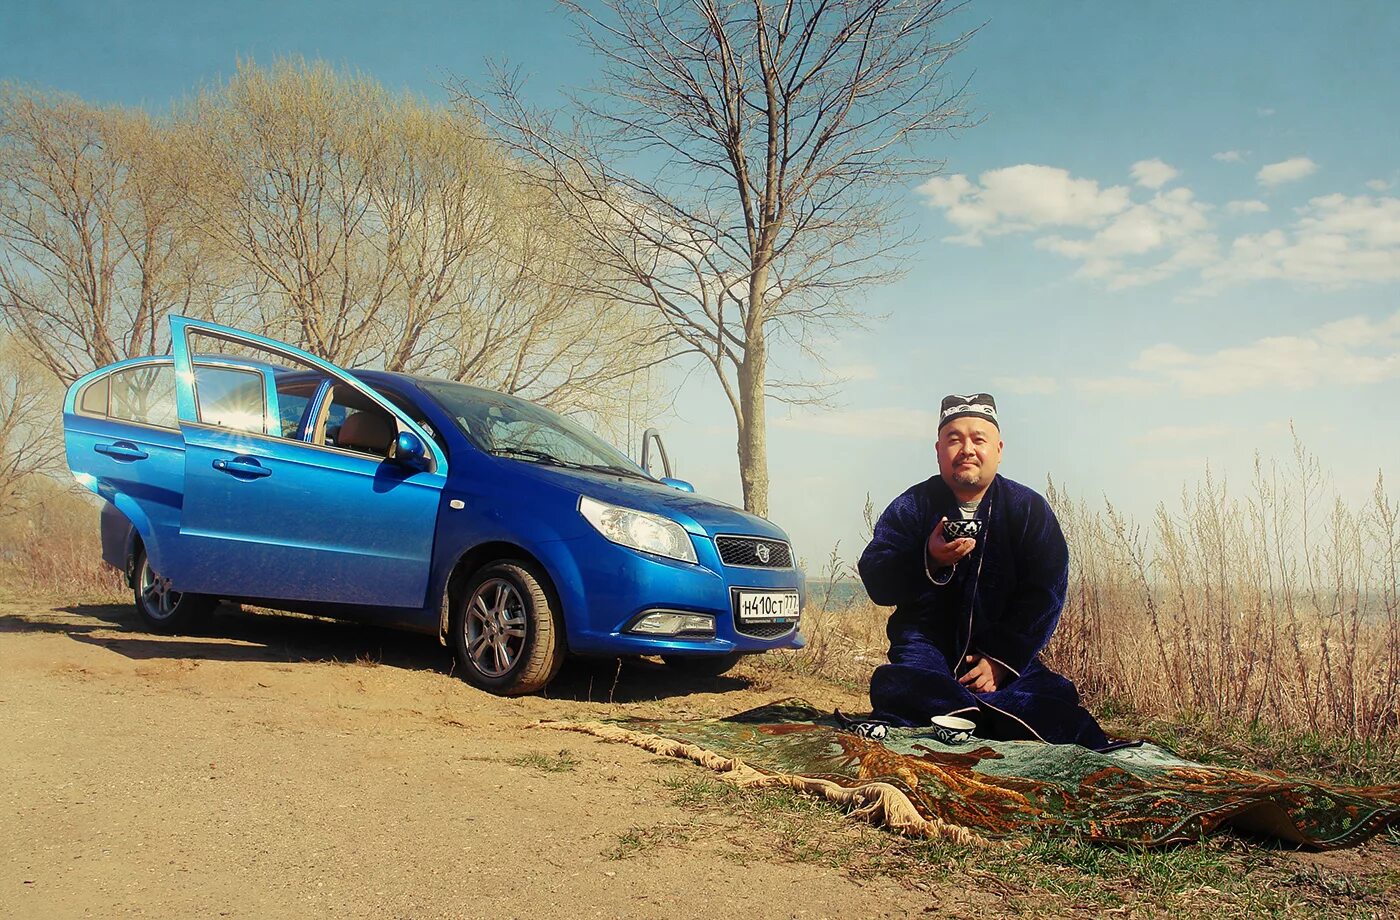 Uzbek avto. Узбек машина. Машины в Узбекистане. Узбек возле машины. Уебский афтомобиль.